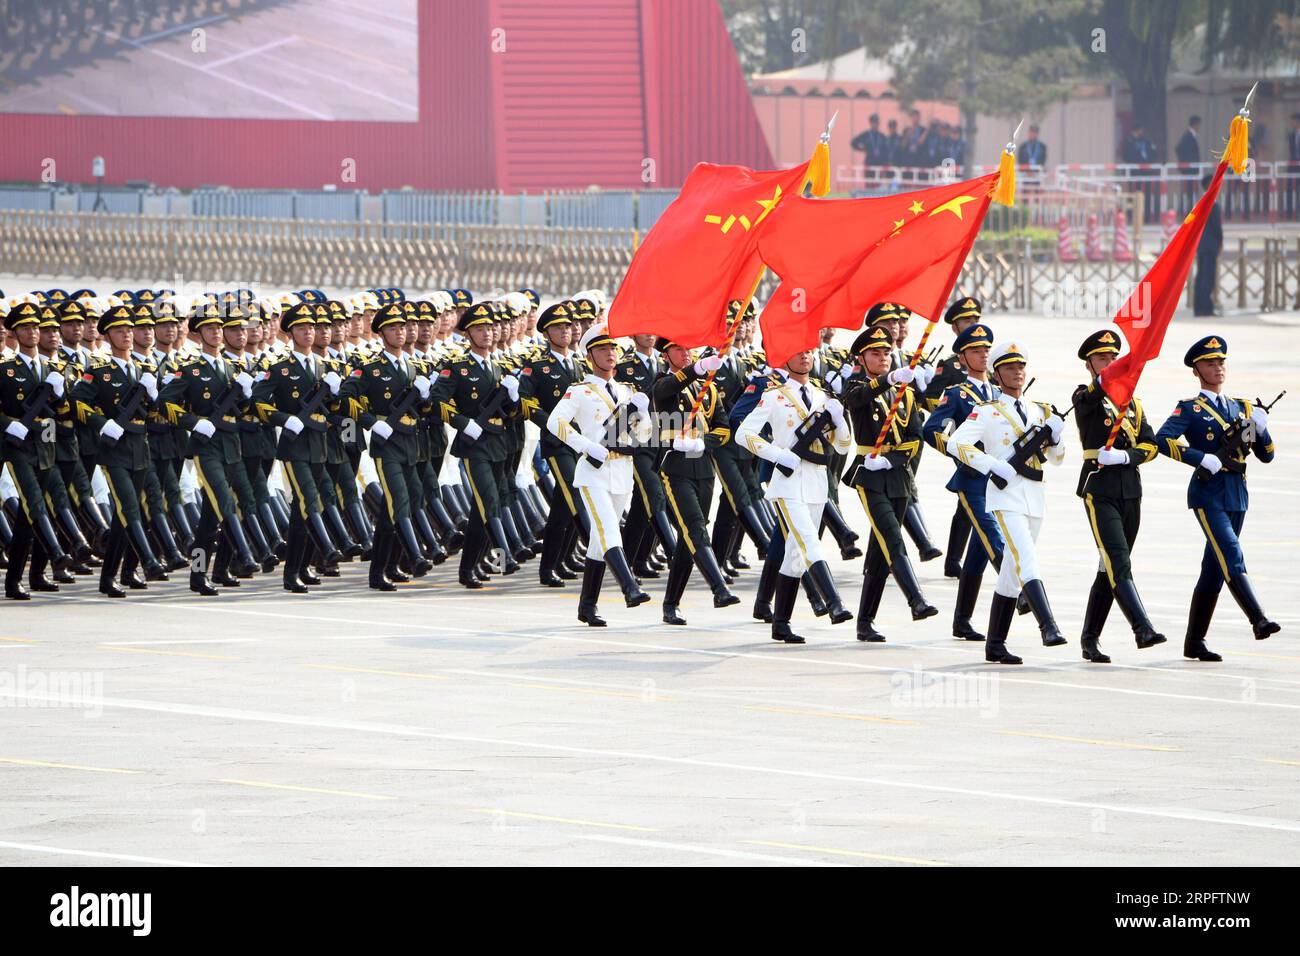 191001 -- PÉKIN, le 1 octobre 2019 -- les gardes de la formation d'honneur participent à un défilé militaire lors des célébrations marquant le 70e anniversaire de la fondation de la République populaire de Chine RPC sur la place Tian anmen à Pékin, capitale de la Chine, le 1 octobre 2019. PRC70YearsCHINA-BEIJING-FÊTE NATIONALE CN LixXiaoguo PUBLICATIONxNOTxINxCHN Banque D'Images